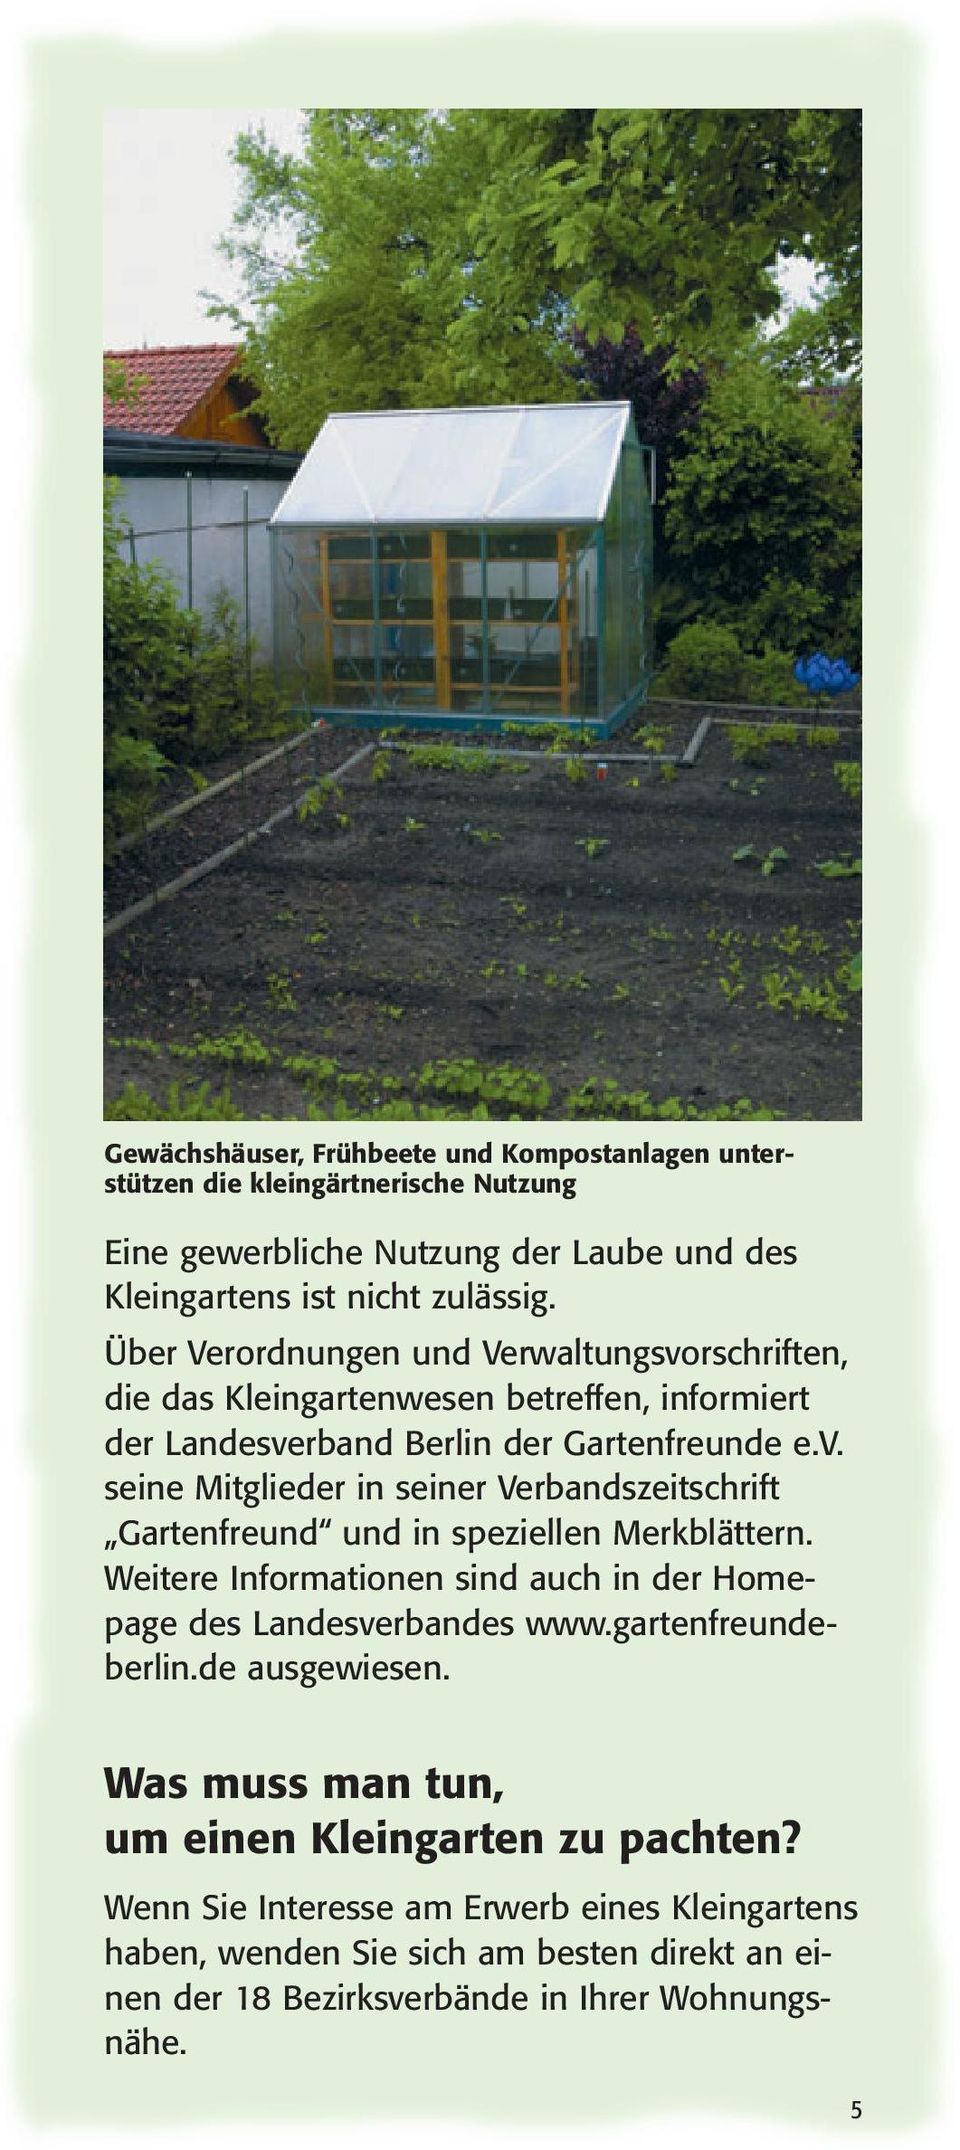 Weitere Informationen sind auch in der Homepage des Landesverbandes www.gartenfreundeberlin.de ausgewiesen. Was muss man tun, um einen Kleingarten zu pachten?